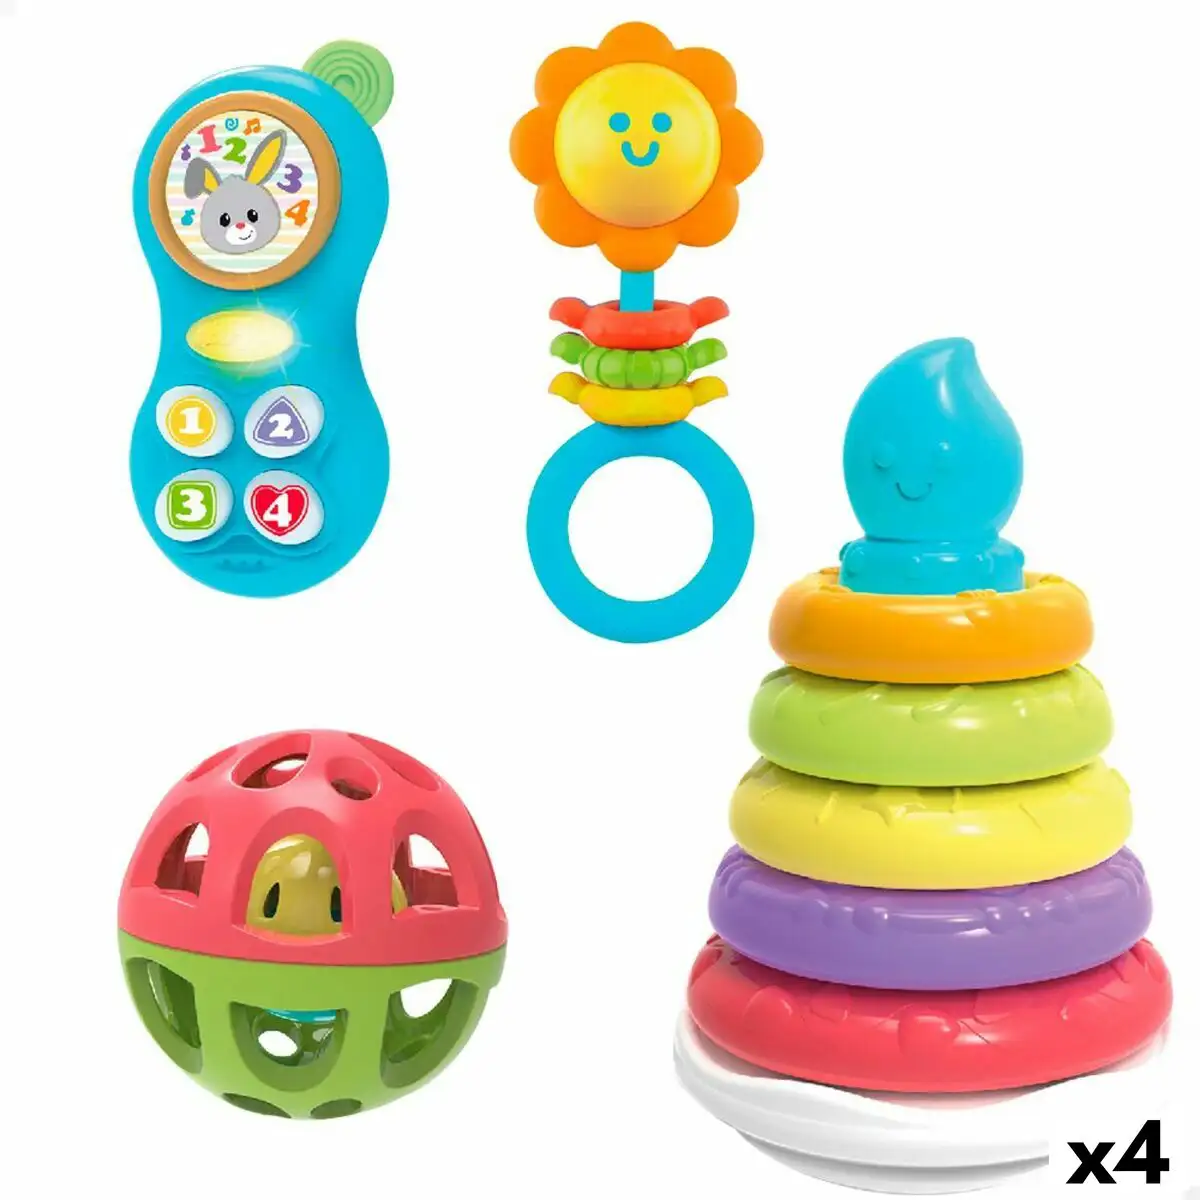 Ensemble de jouets pour bebes winfun 13 x 20 x 13 cm 4 unites_5332. DIAYTAR SENEGAL - Votre Portail Vers l'Exclusivité. Explorez notre boutique en ligne pour trouver des produits uniques et exclusifs, conçus pour les amateurs de qualité.